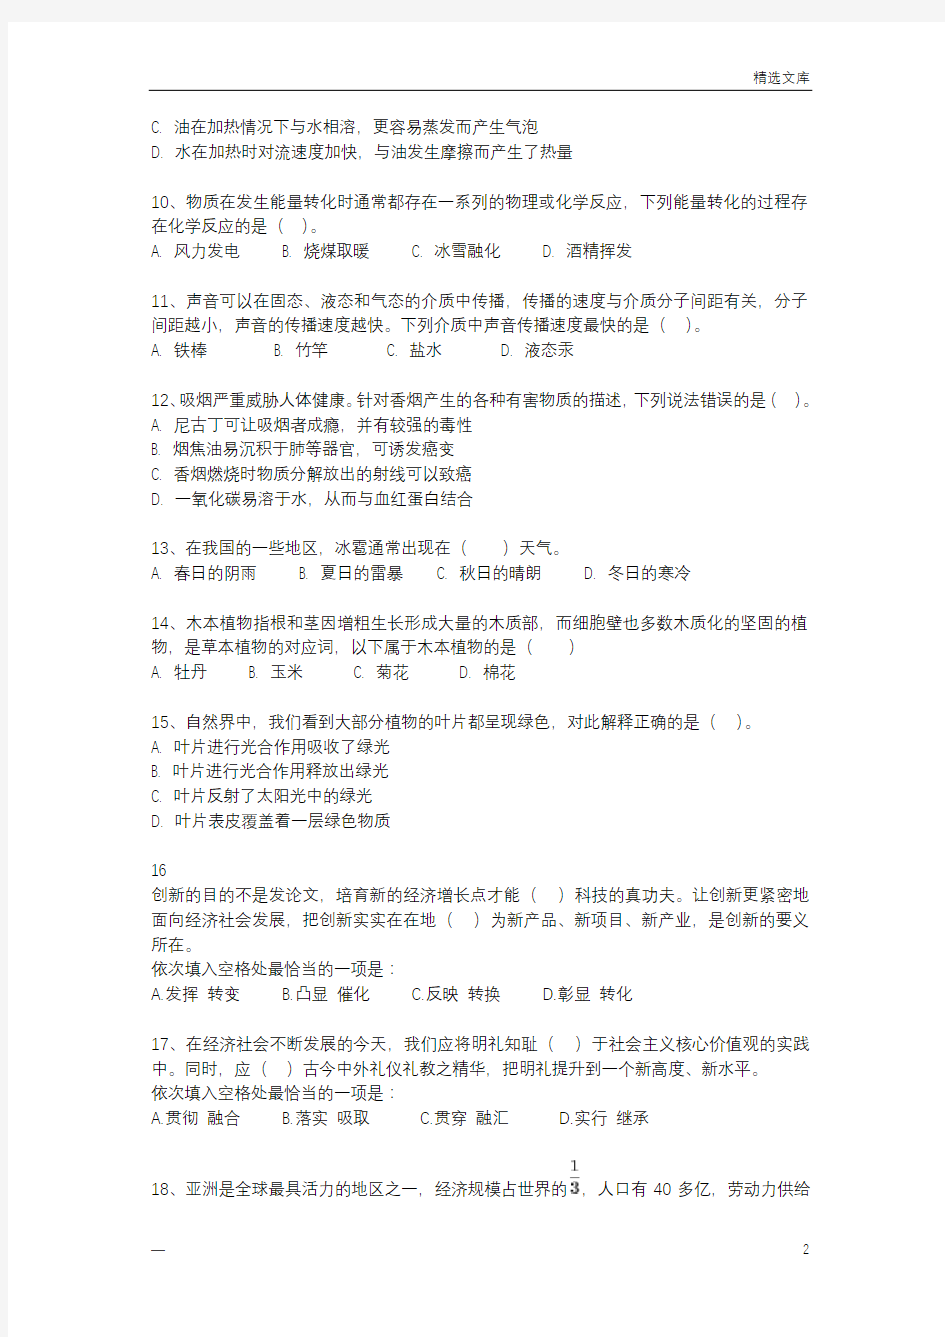 2016年广东公务员县级考试《行测二》真题试卷及解析(整理完整版,可直接打印)